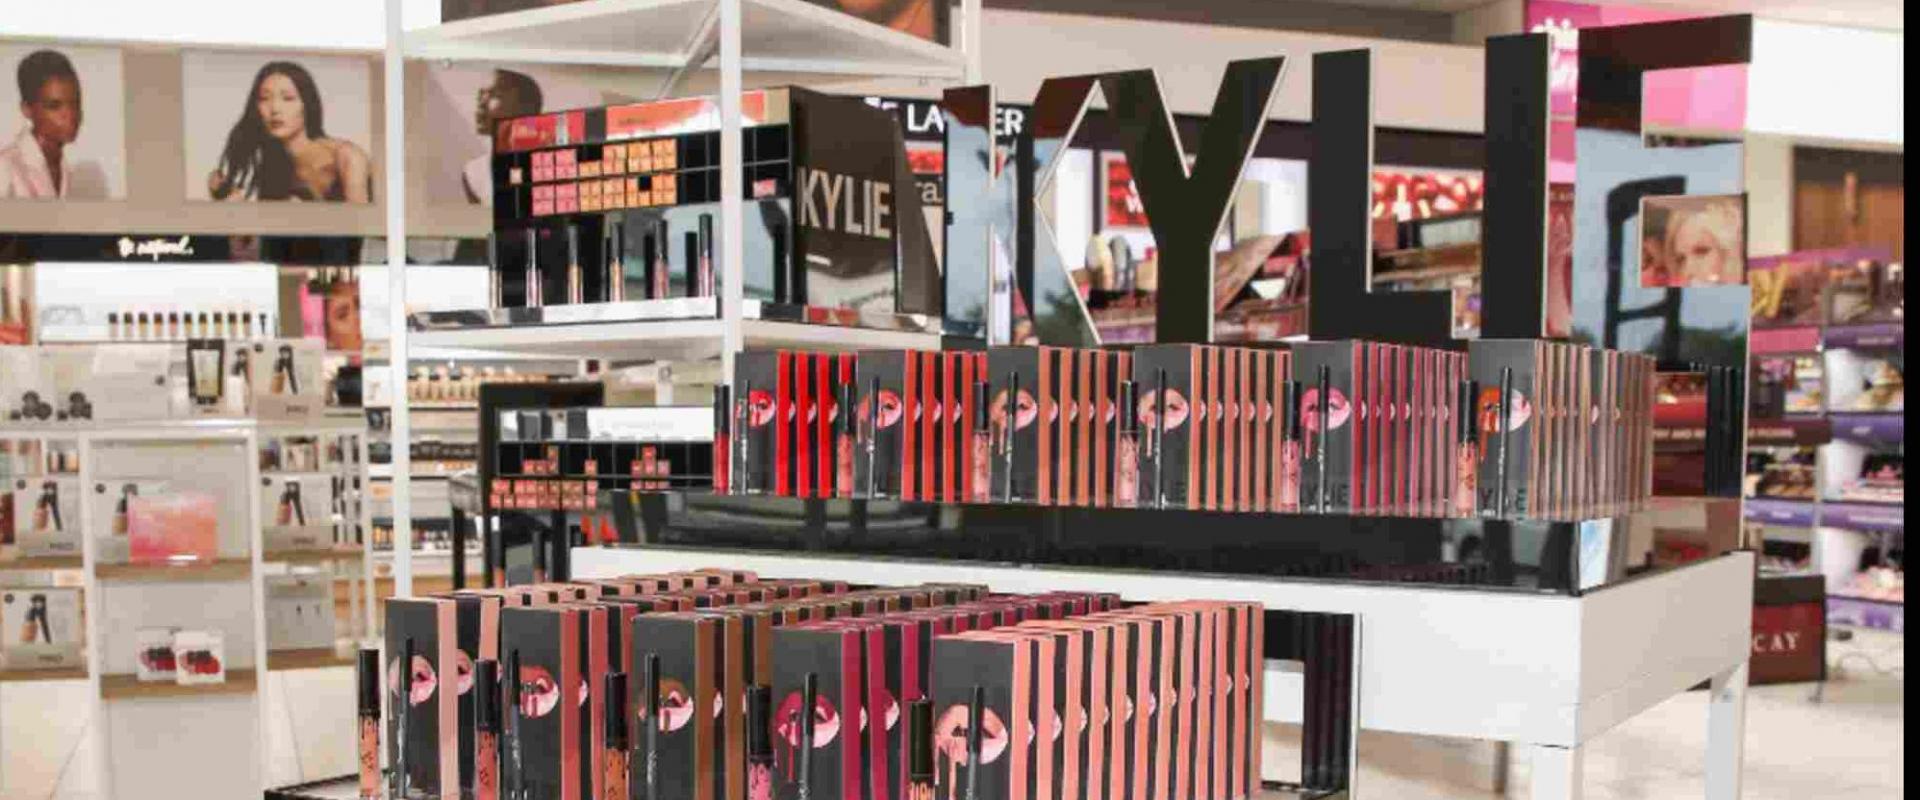 Coty na dużych zakupach - koncern przejmuje pakiet większościowy niezwykle popularnej marki Kylie Jenner